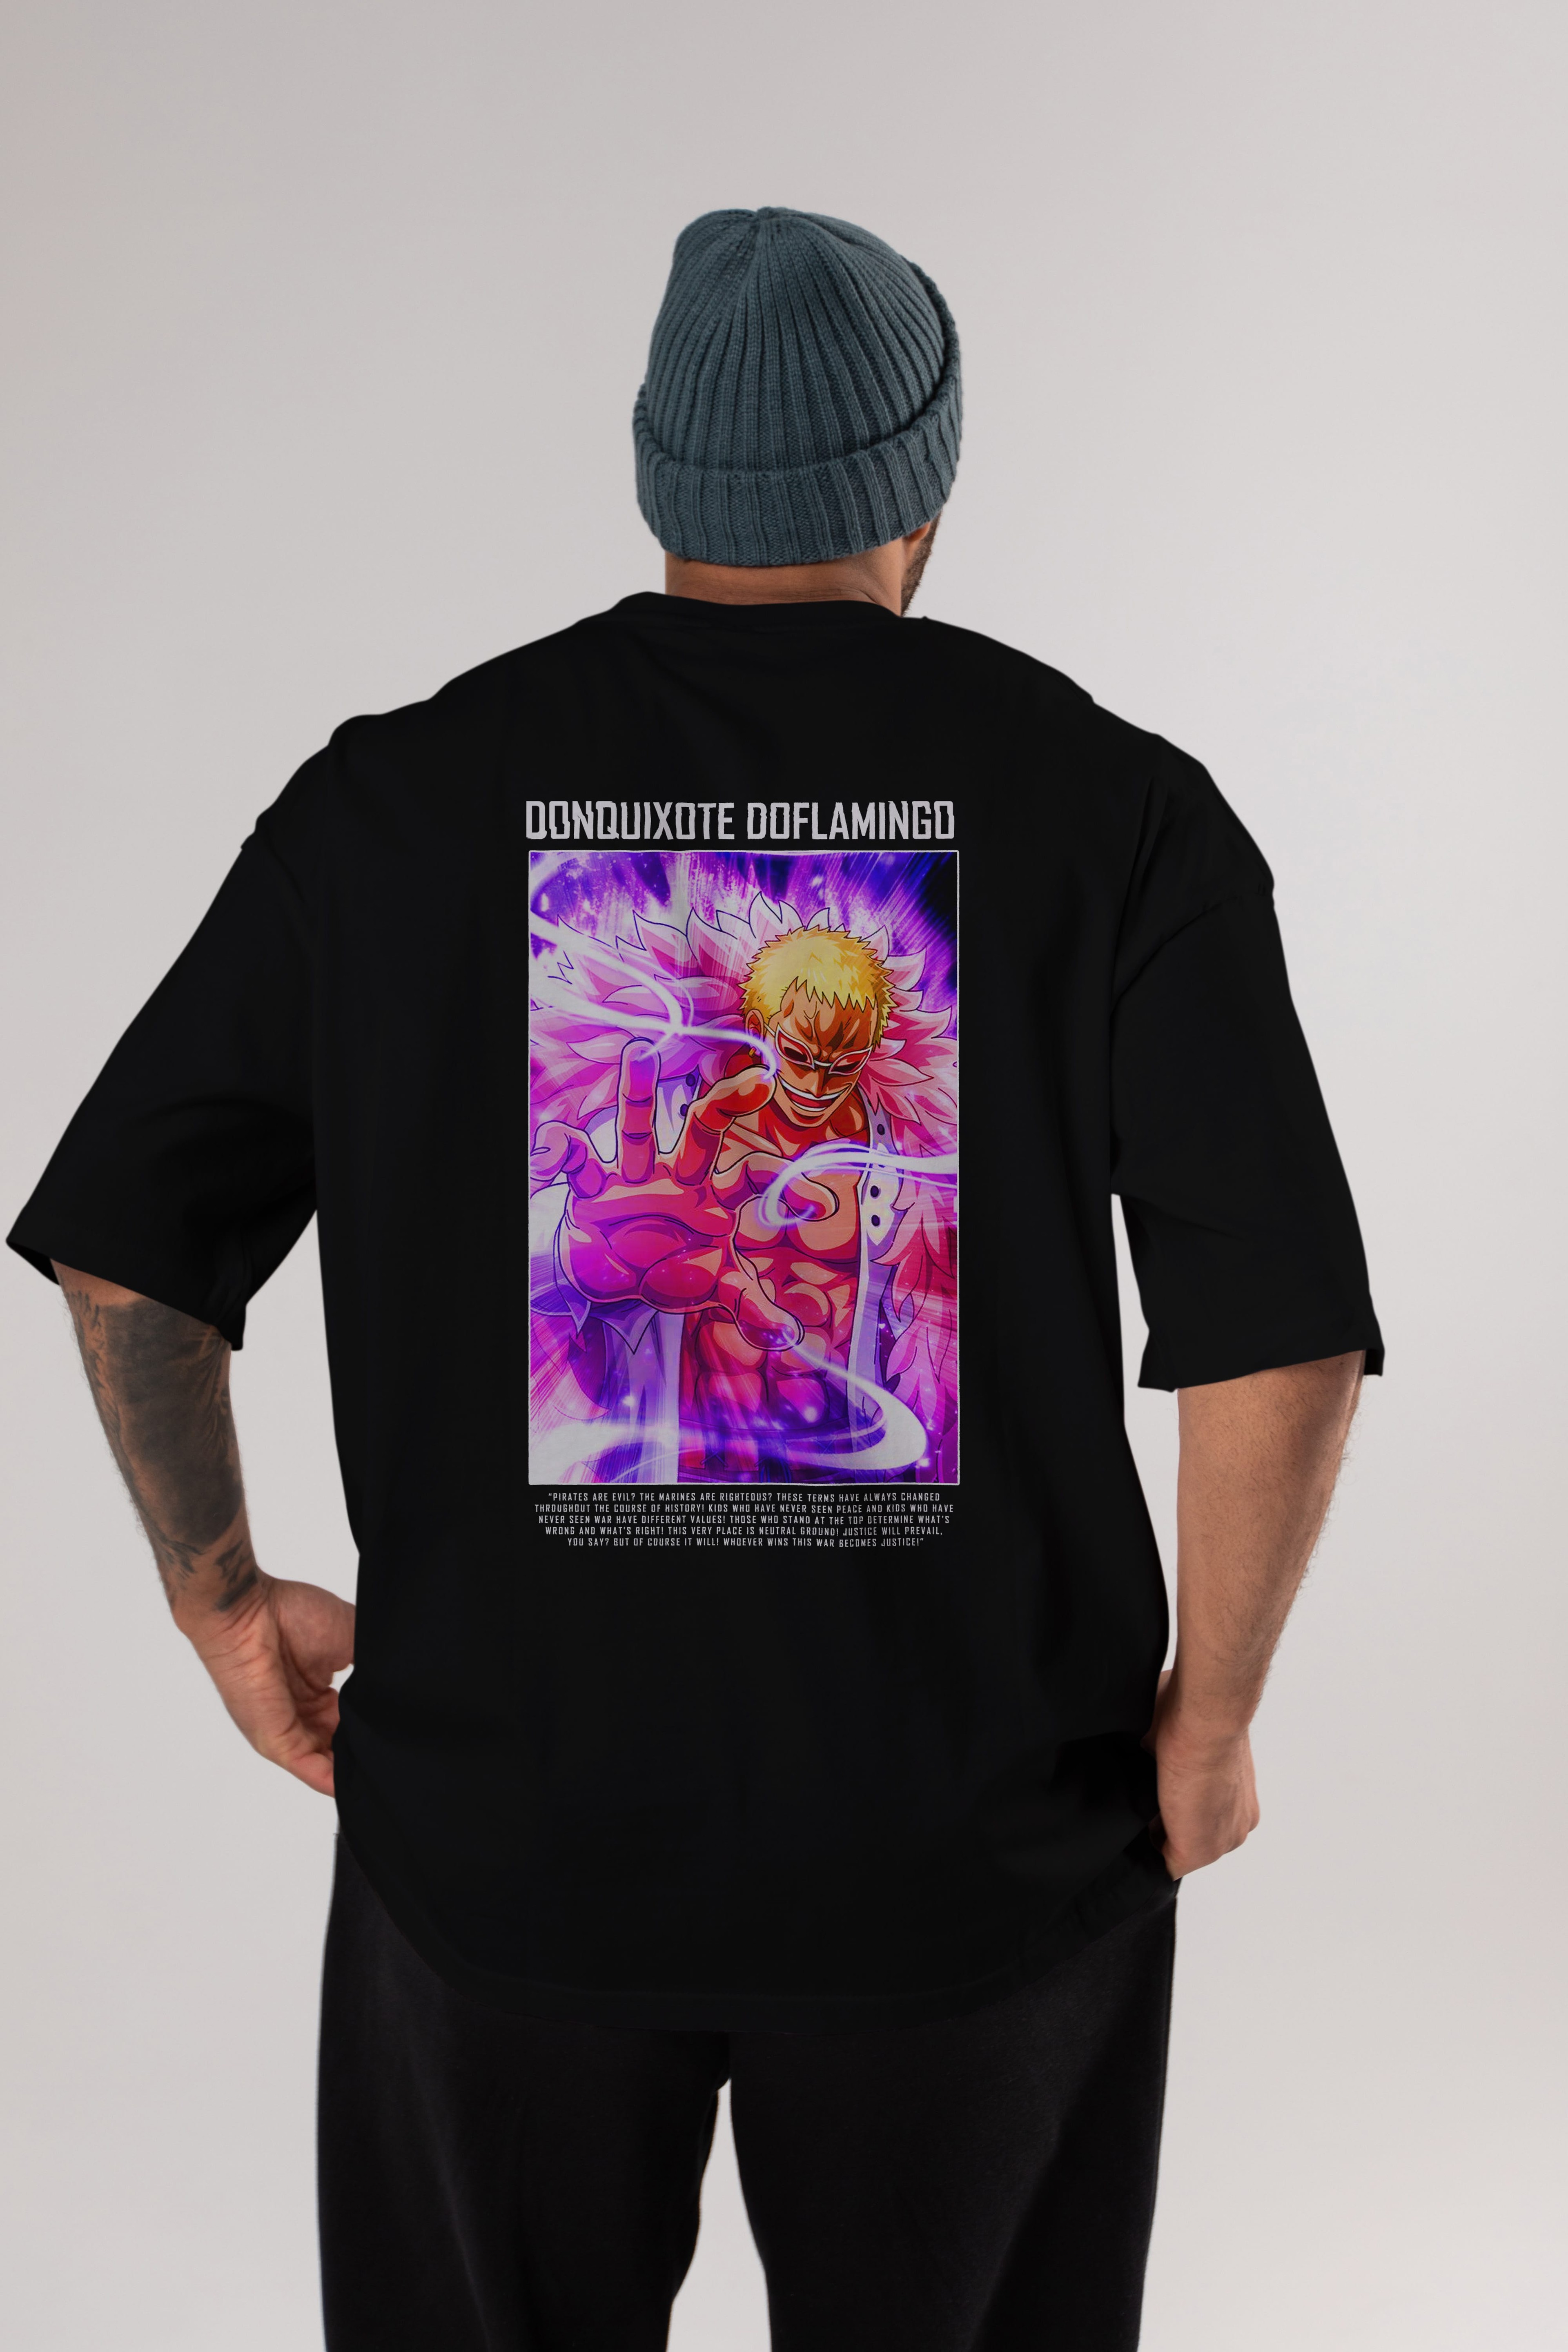 Doflamingo Anime Arka Baskılı Oversize t-shirt Erkek Kadın Unisex %100 pamuk tişort